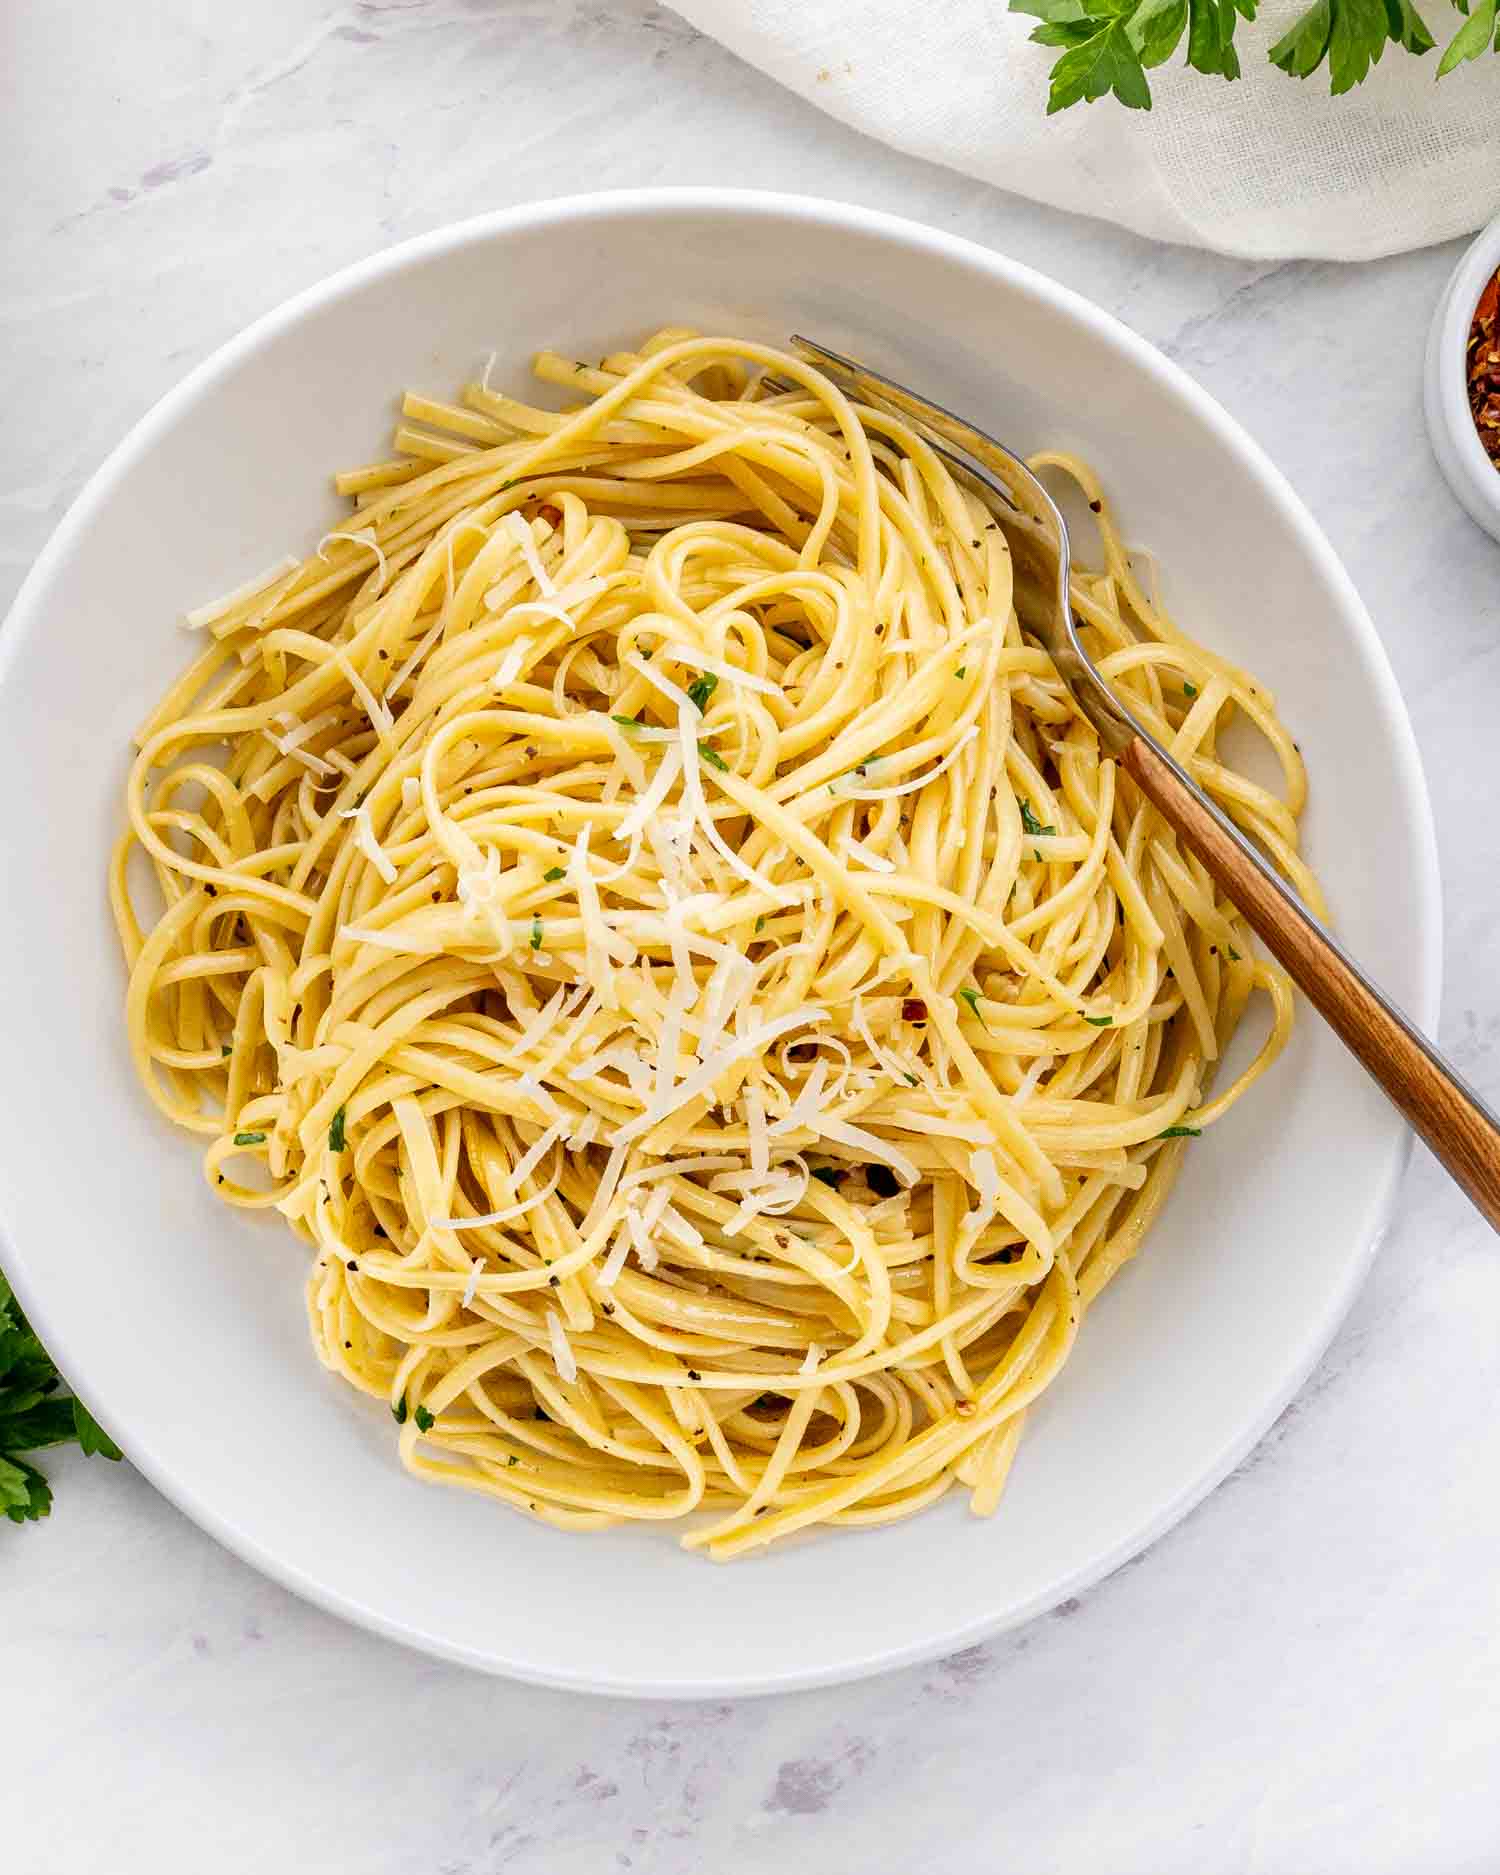 a serving of aglio e olio in a white bowl.